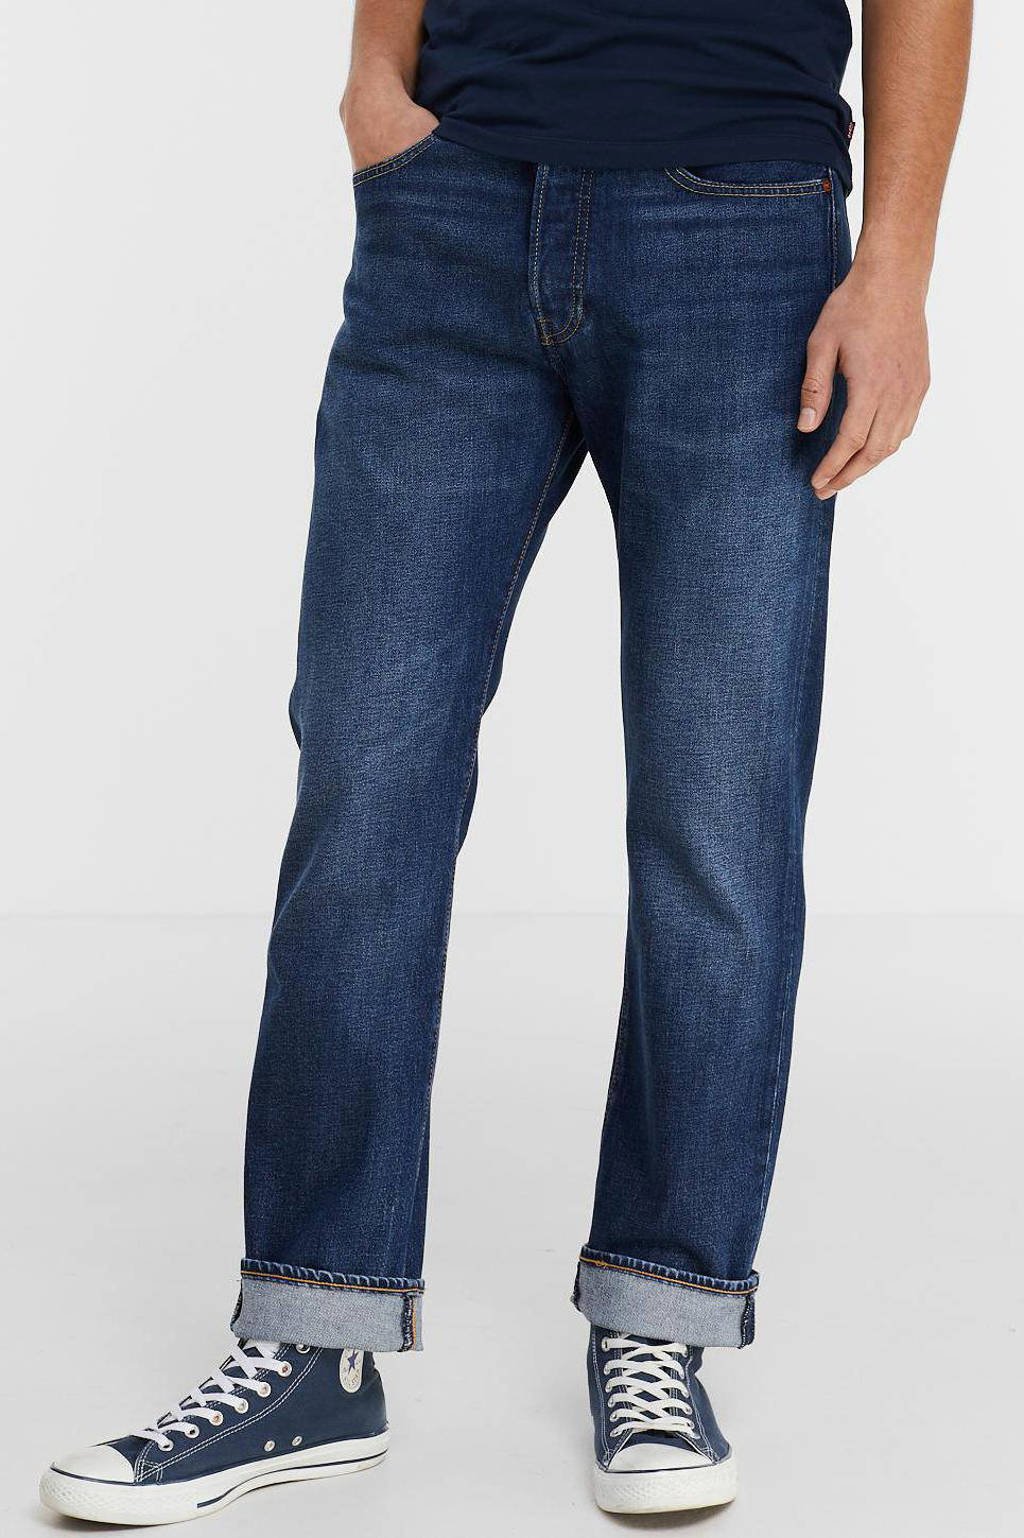 Levi's 501 regular fit jeans go back home